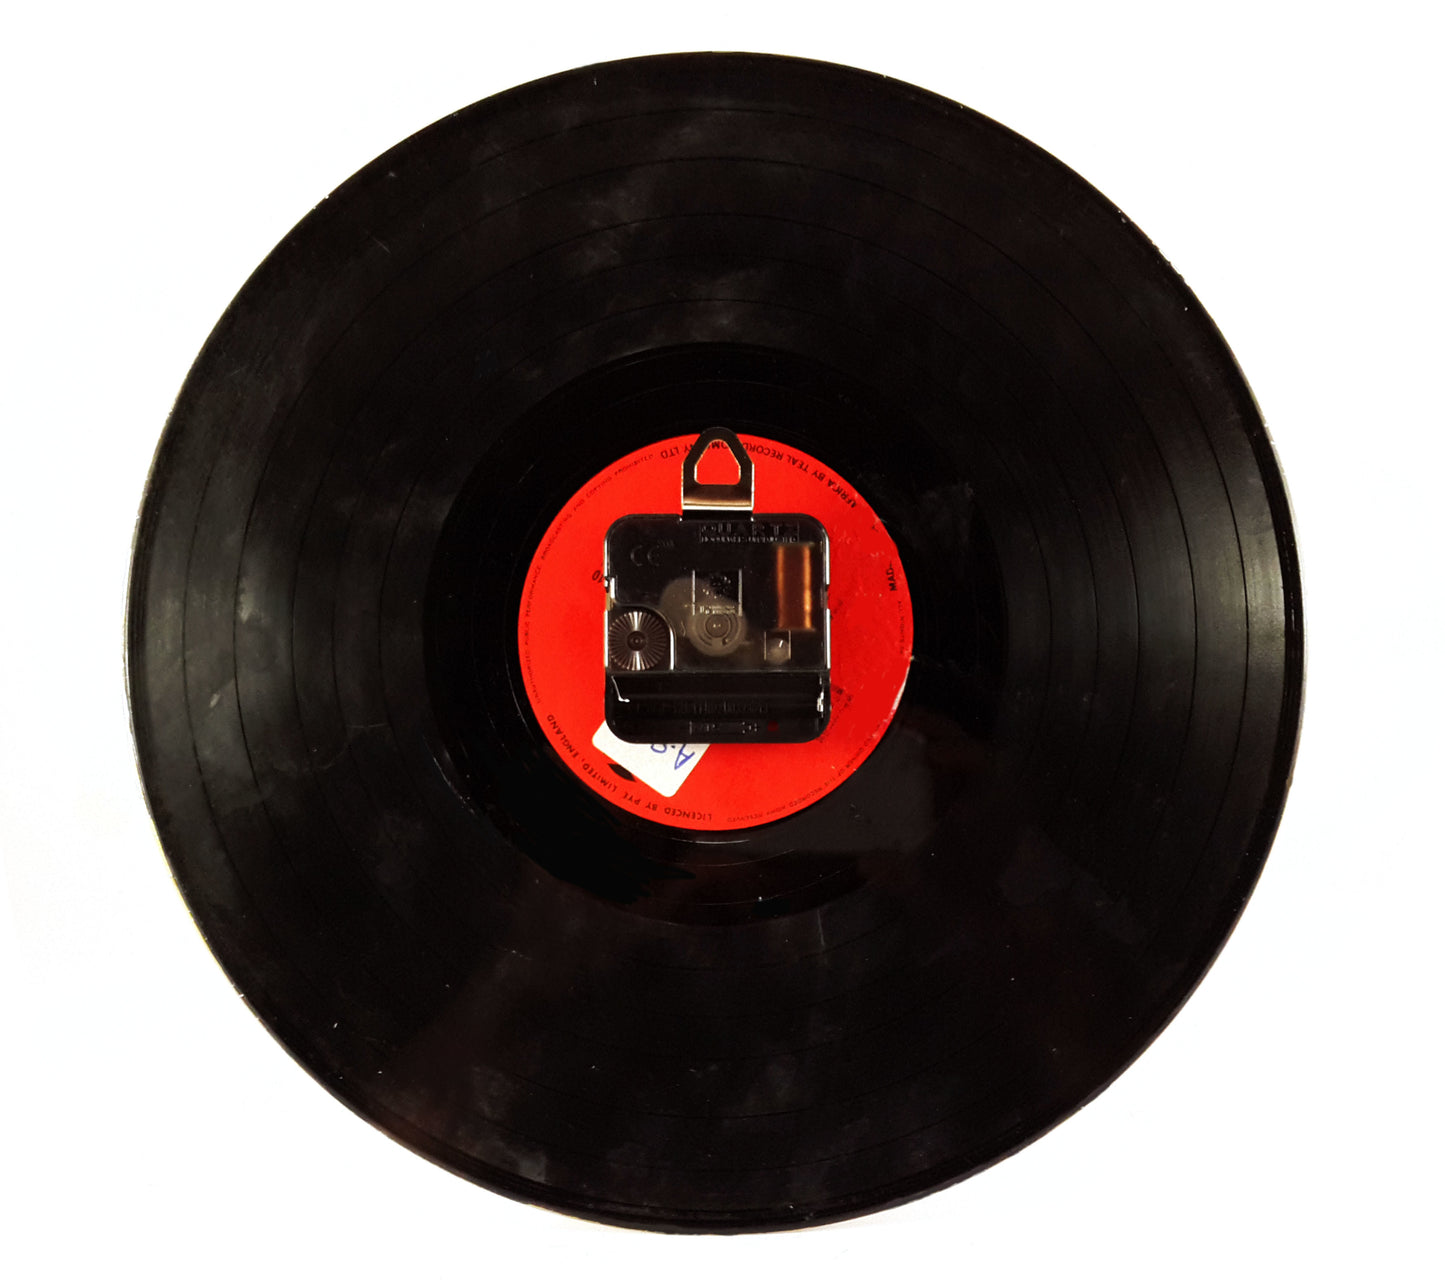  Coca Cola Logo Vinyl Clock freeshipping - Pubstuff 391.00